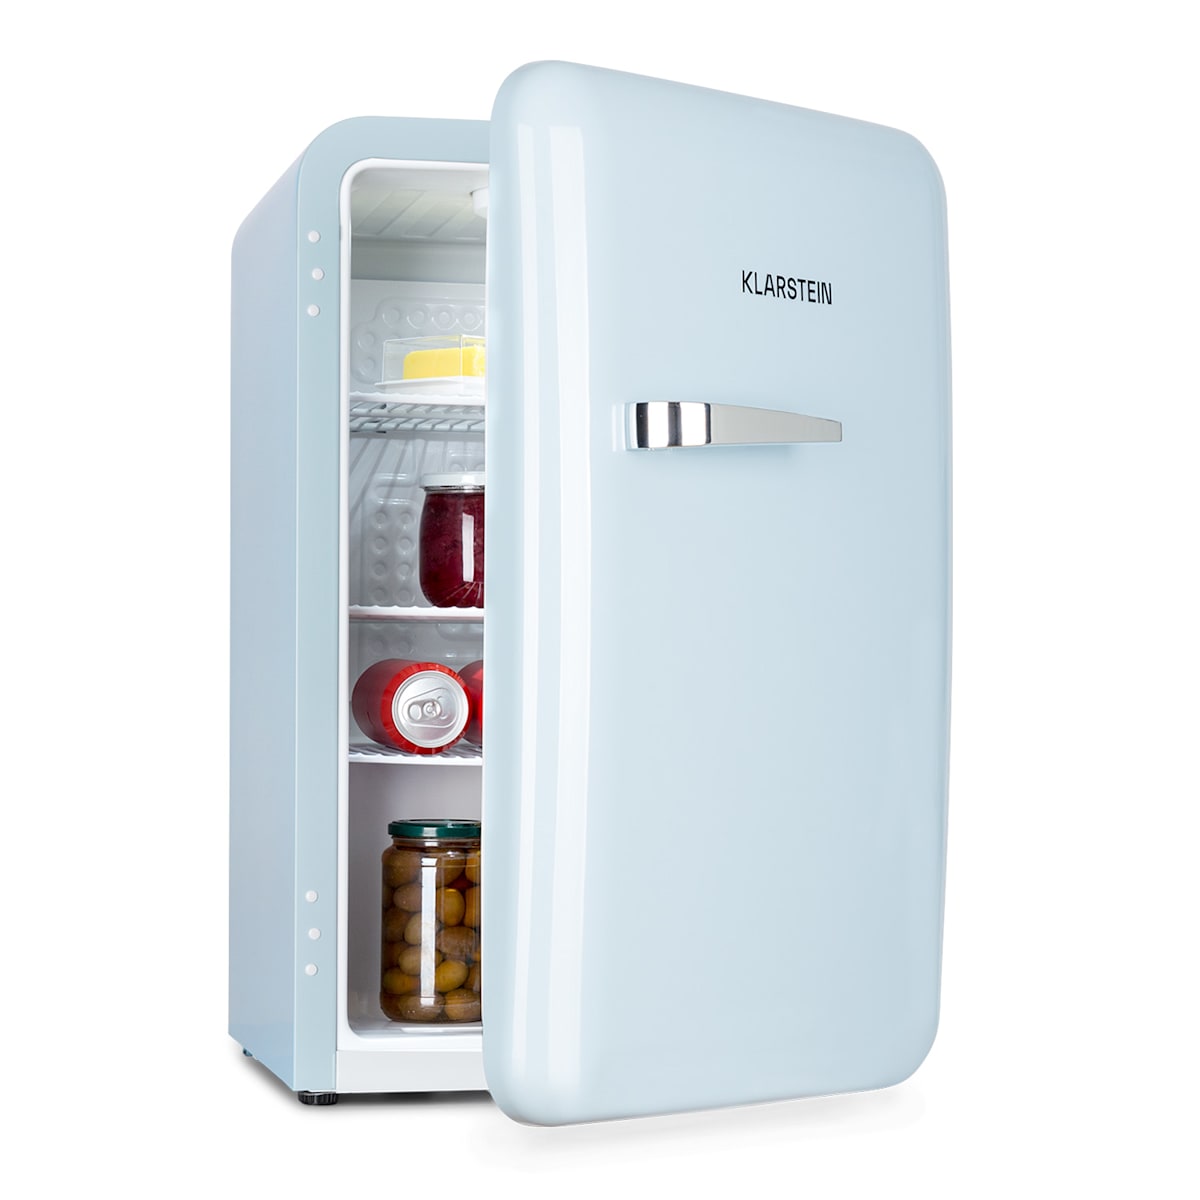 PopArt Retro-Kühlschrank, abgerundetes Retro-Design